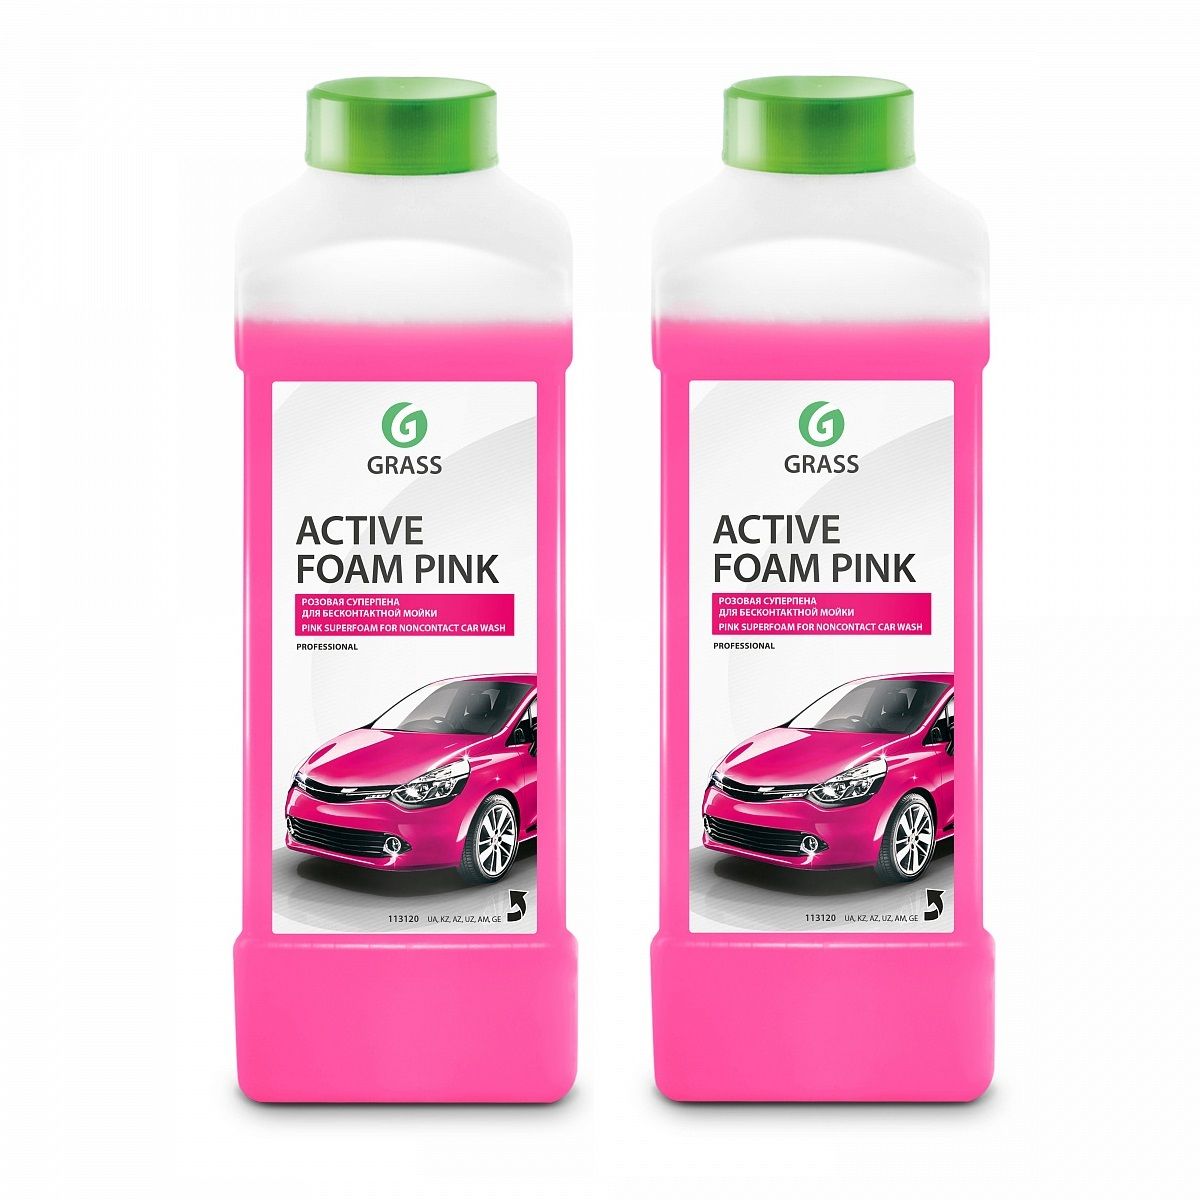 Пена грасс для бесконтактной мойки. Активная пена grass, Active Foam Pink, 1 л. Автохимия Active Foam Pink-20л. Автошампунь для бесконтактной мойки Active Foam Pink 1л. Грасс Active Foam Pink.